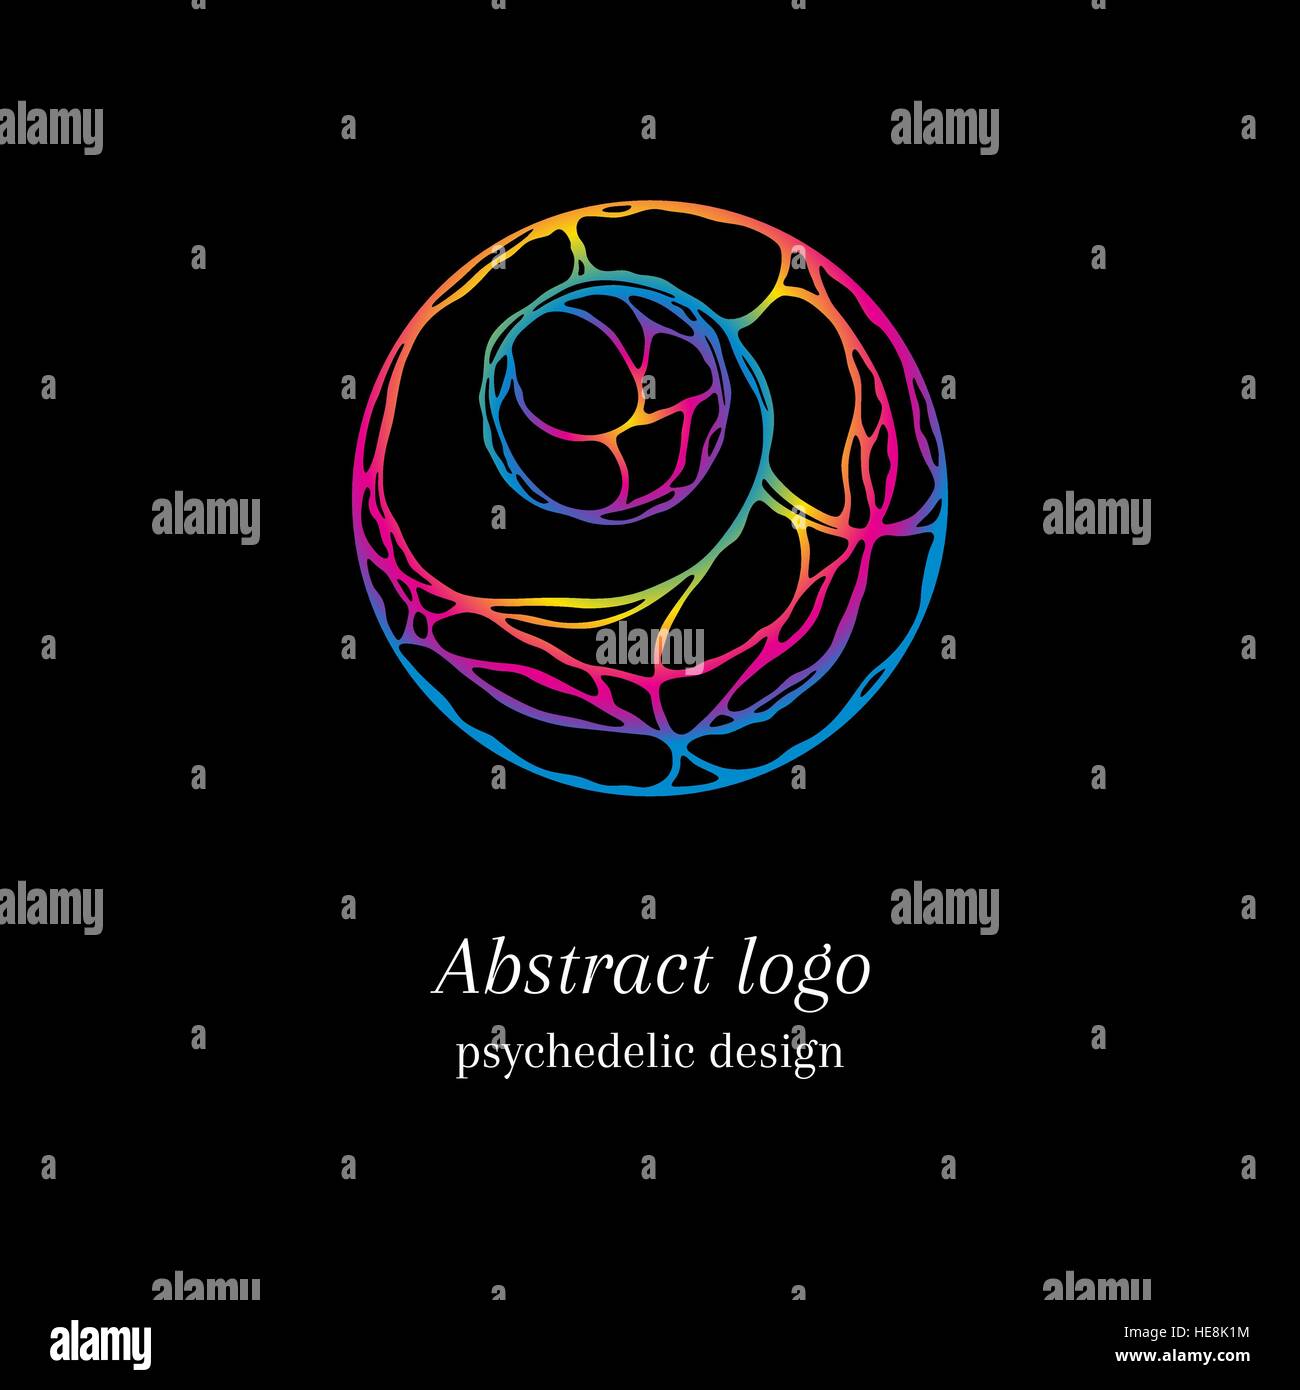 Stilvolle abstrakte Gewirr Logo, psychedelische design Stock Vektor